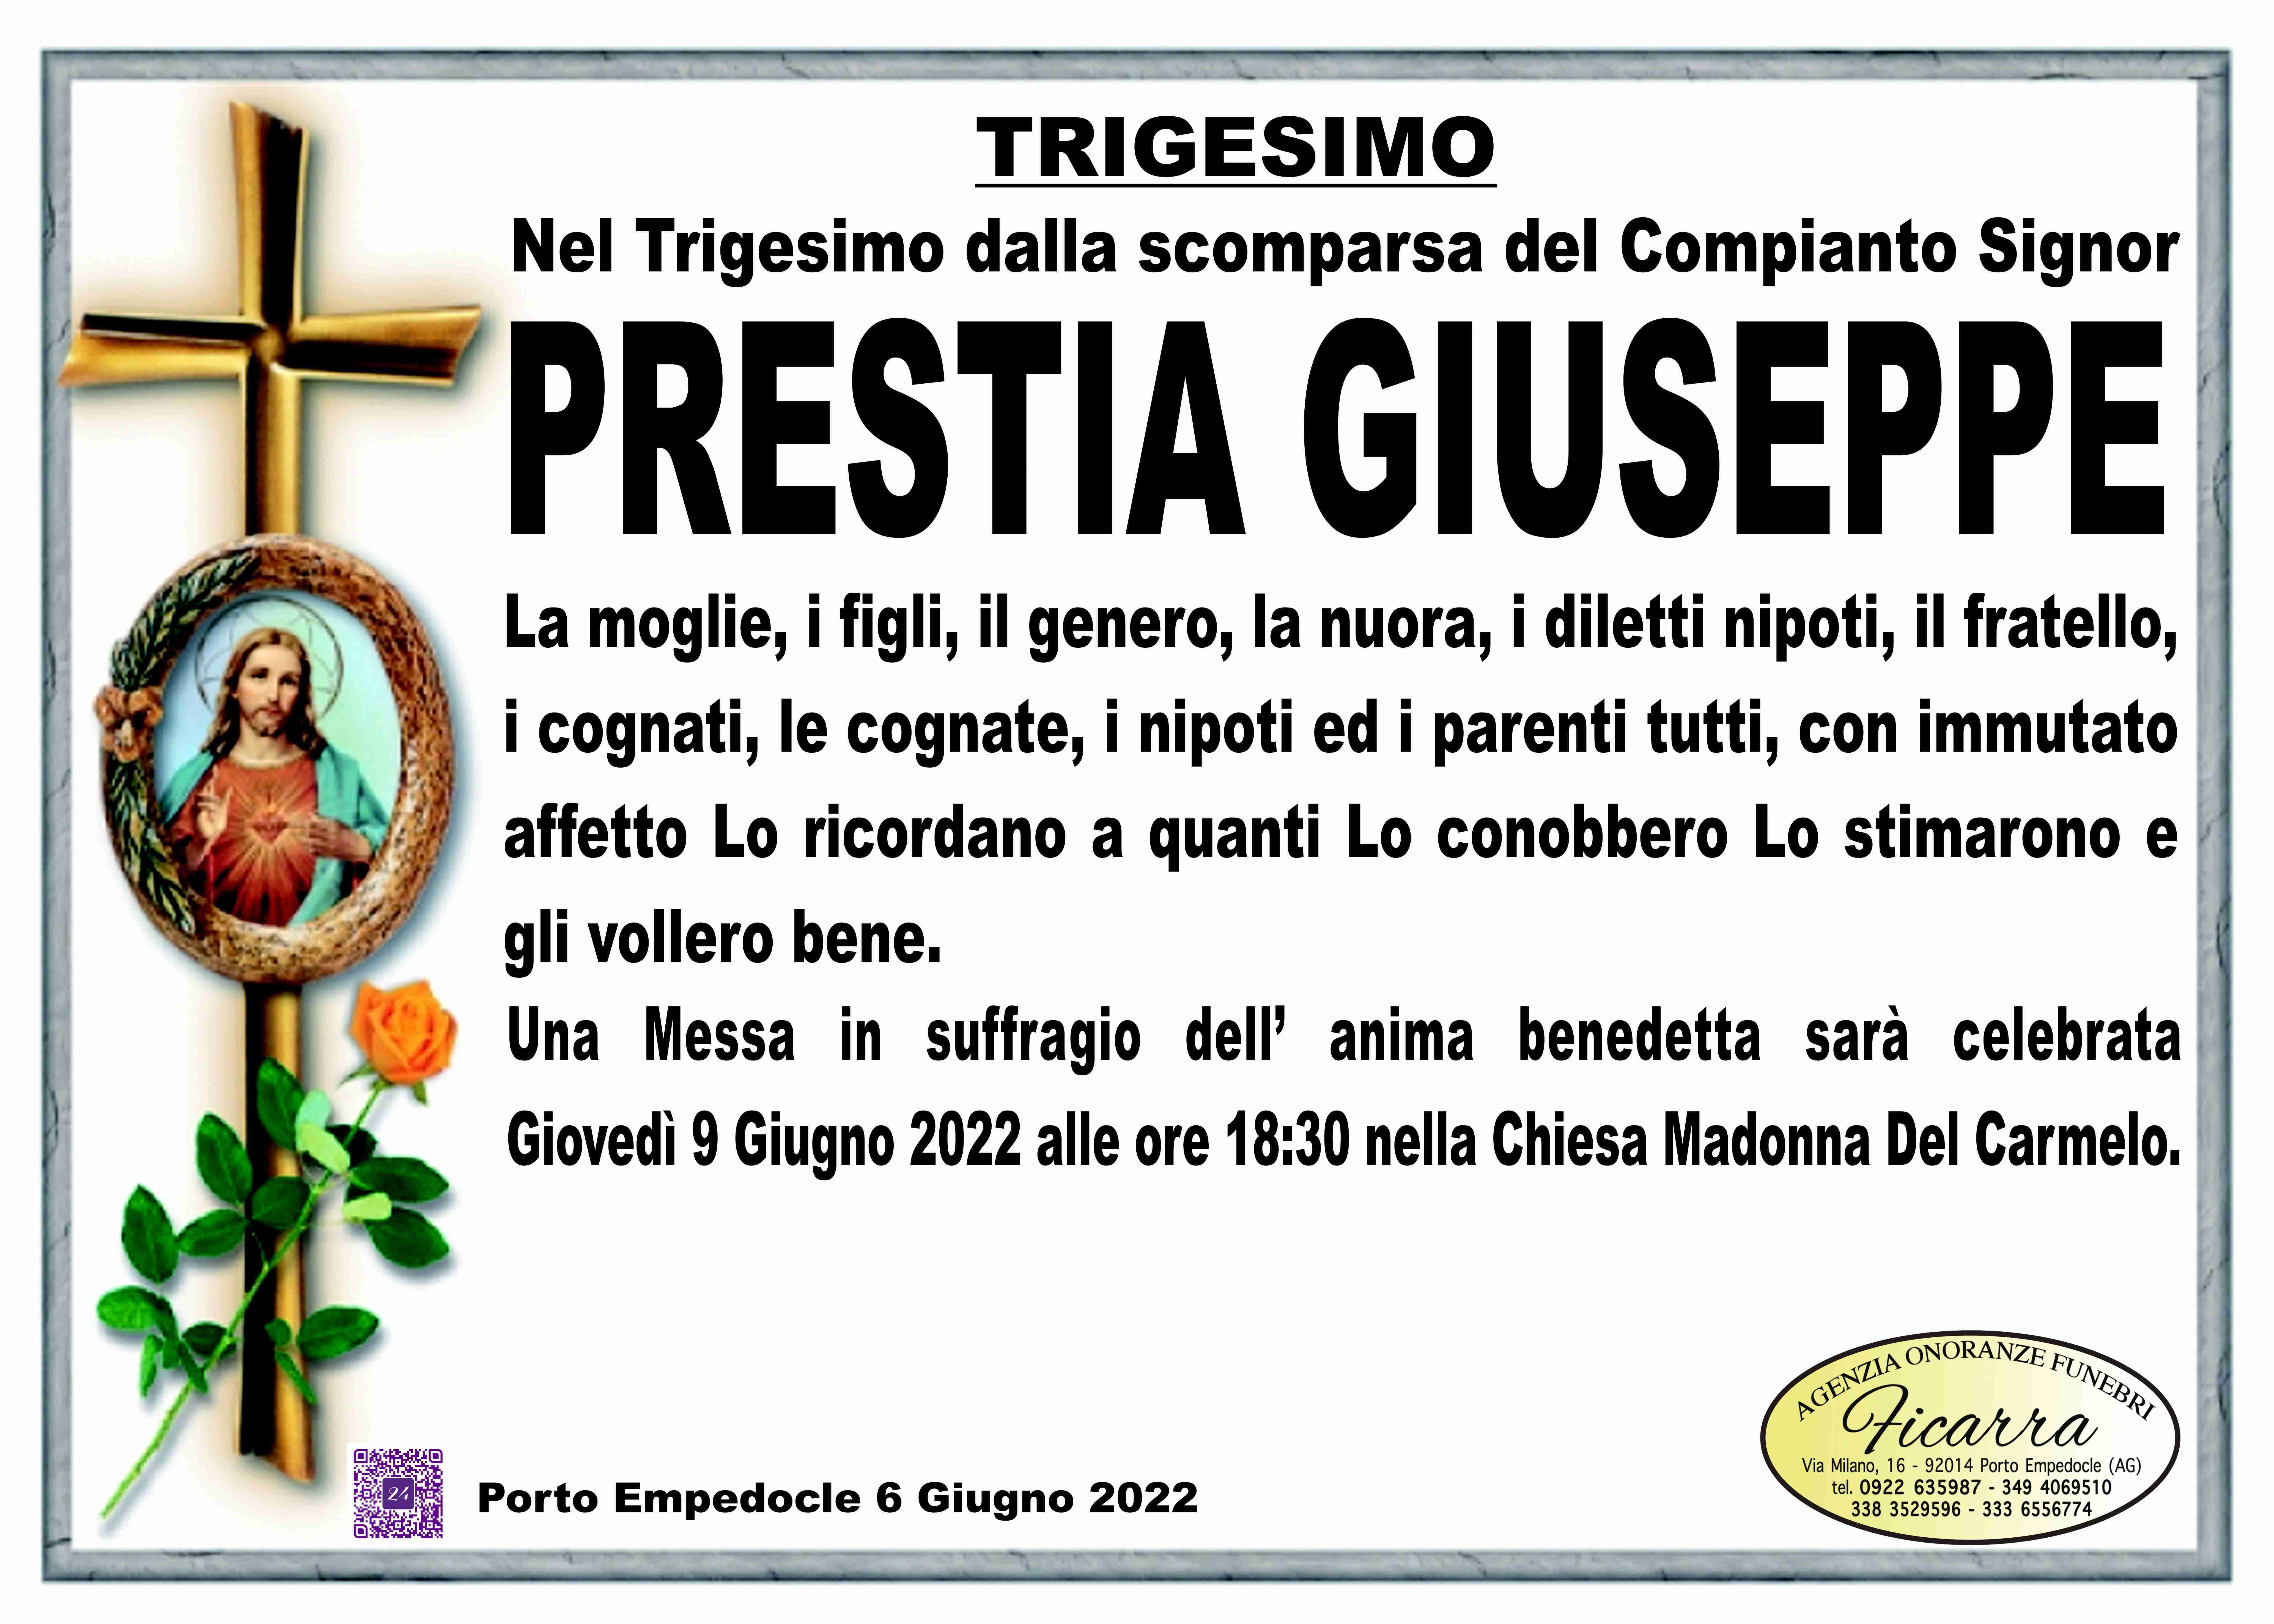 Giuseppe Prestia